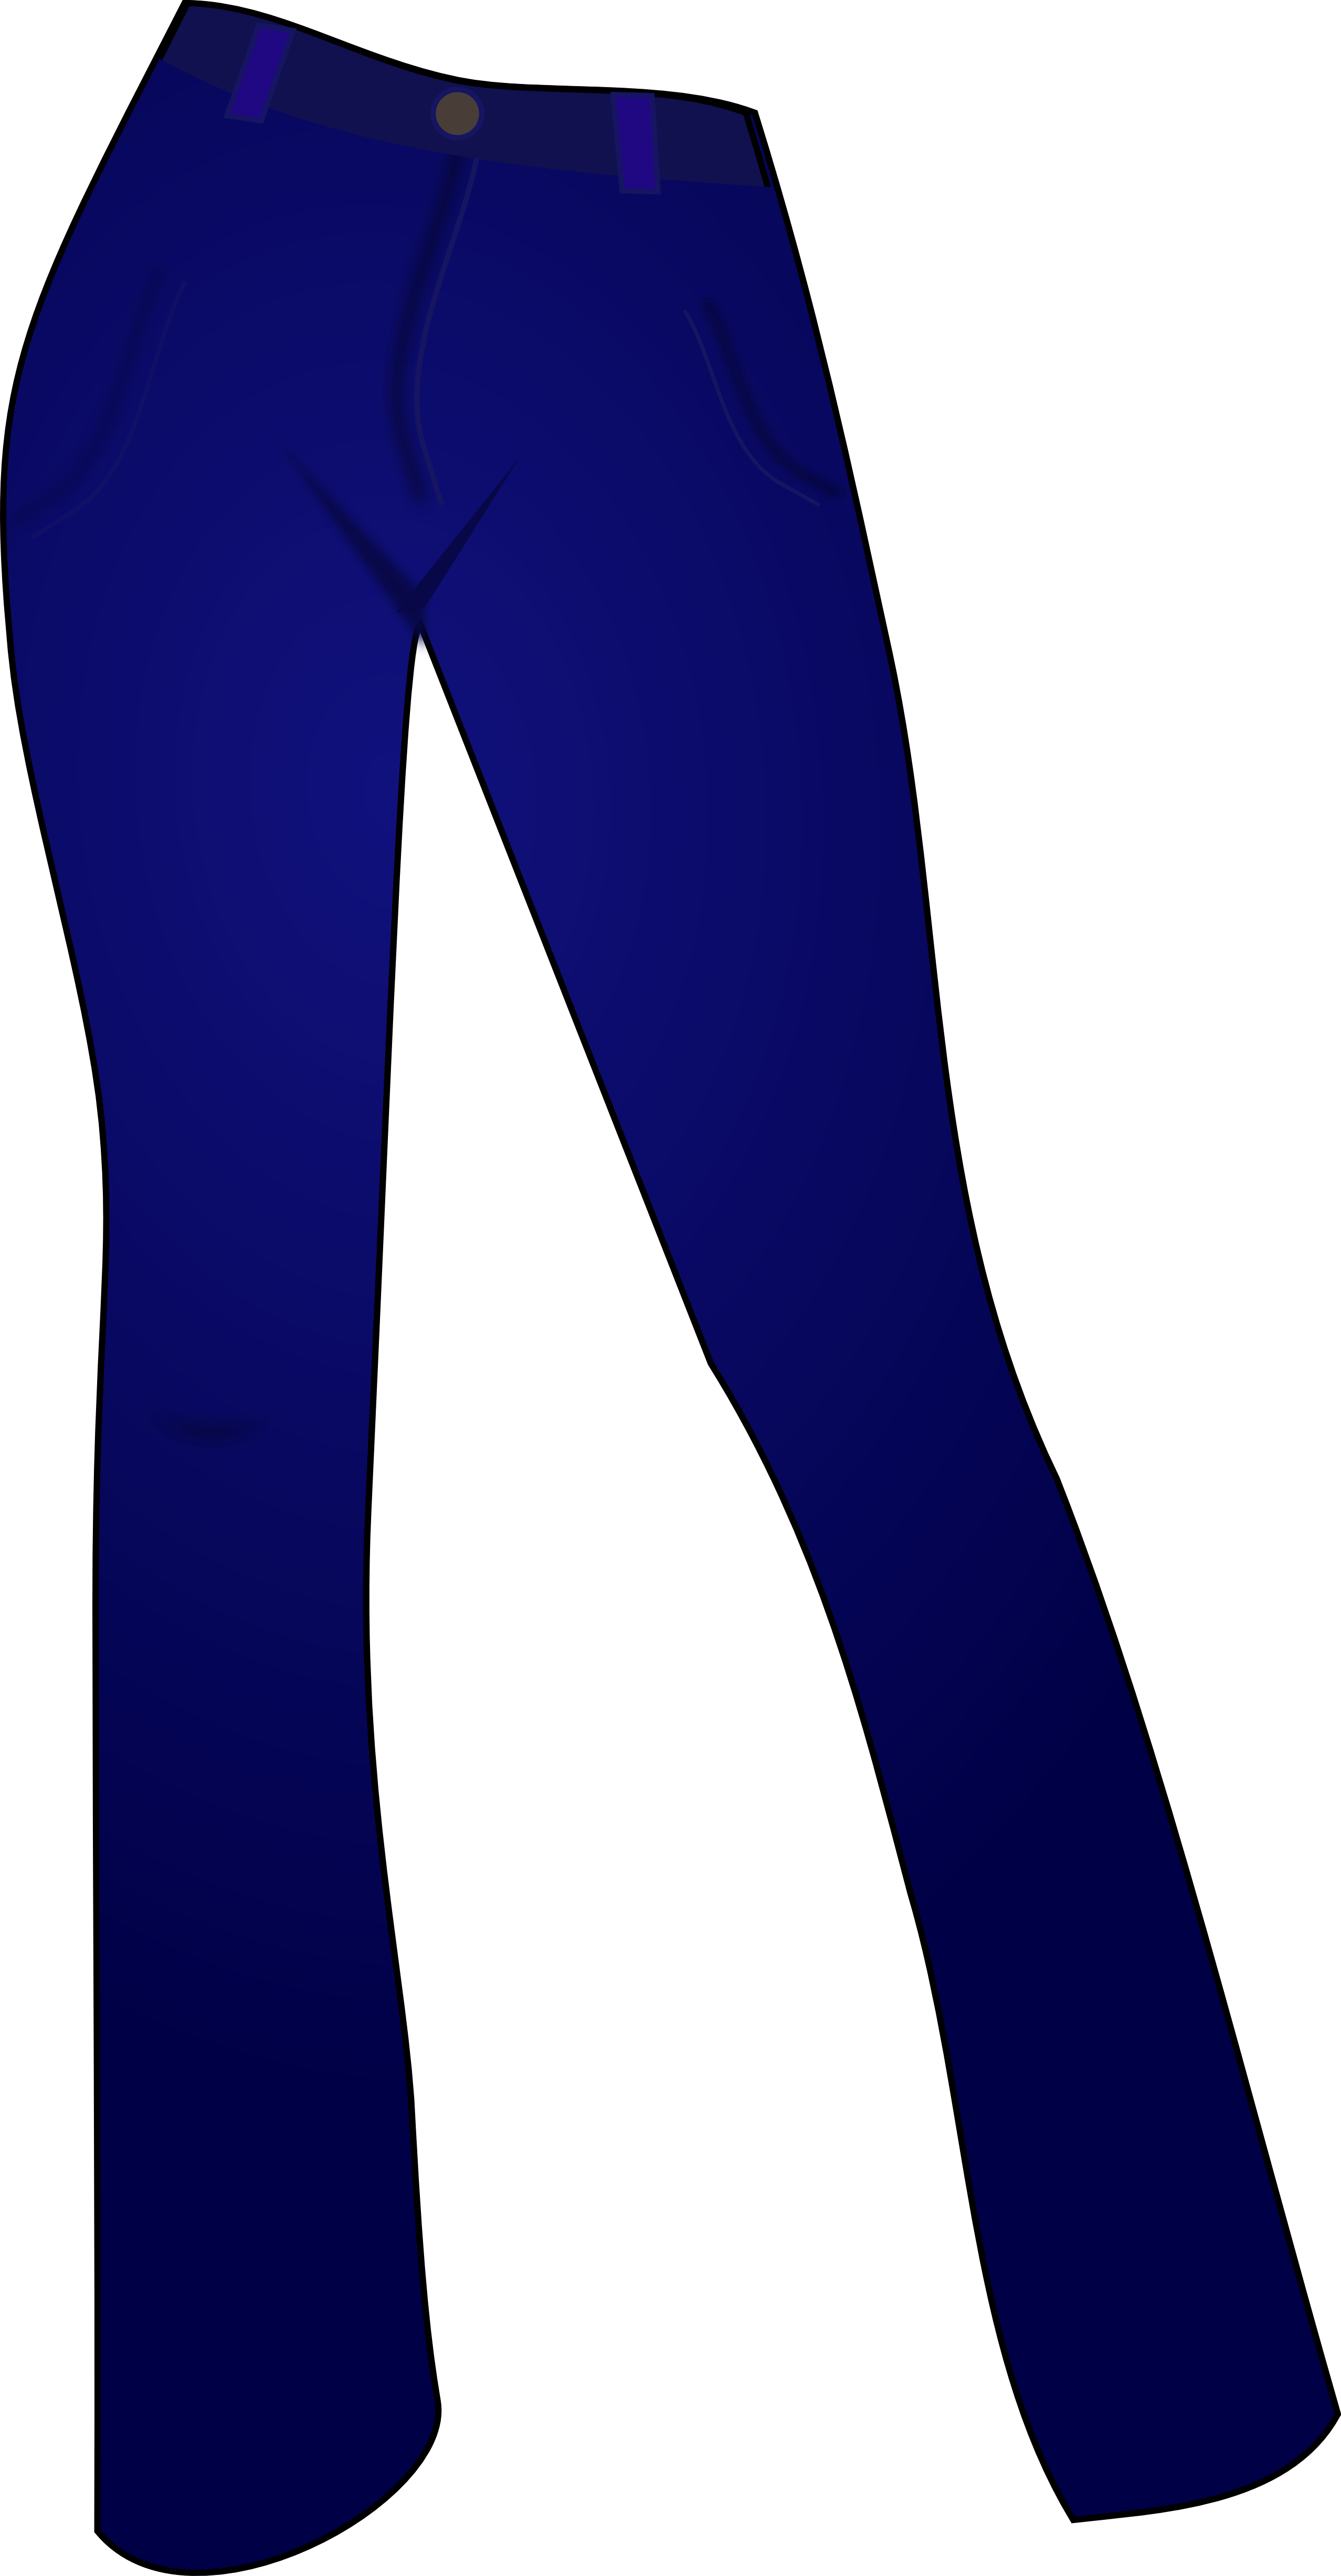 Trends For Jeans Clip Art - Blue Jeans Clip Art